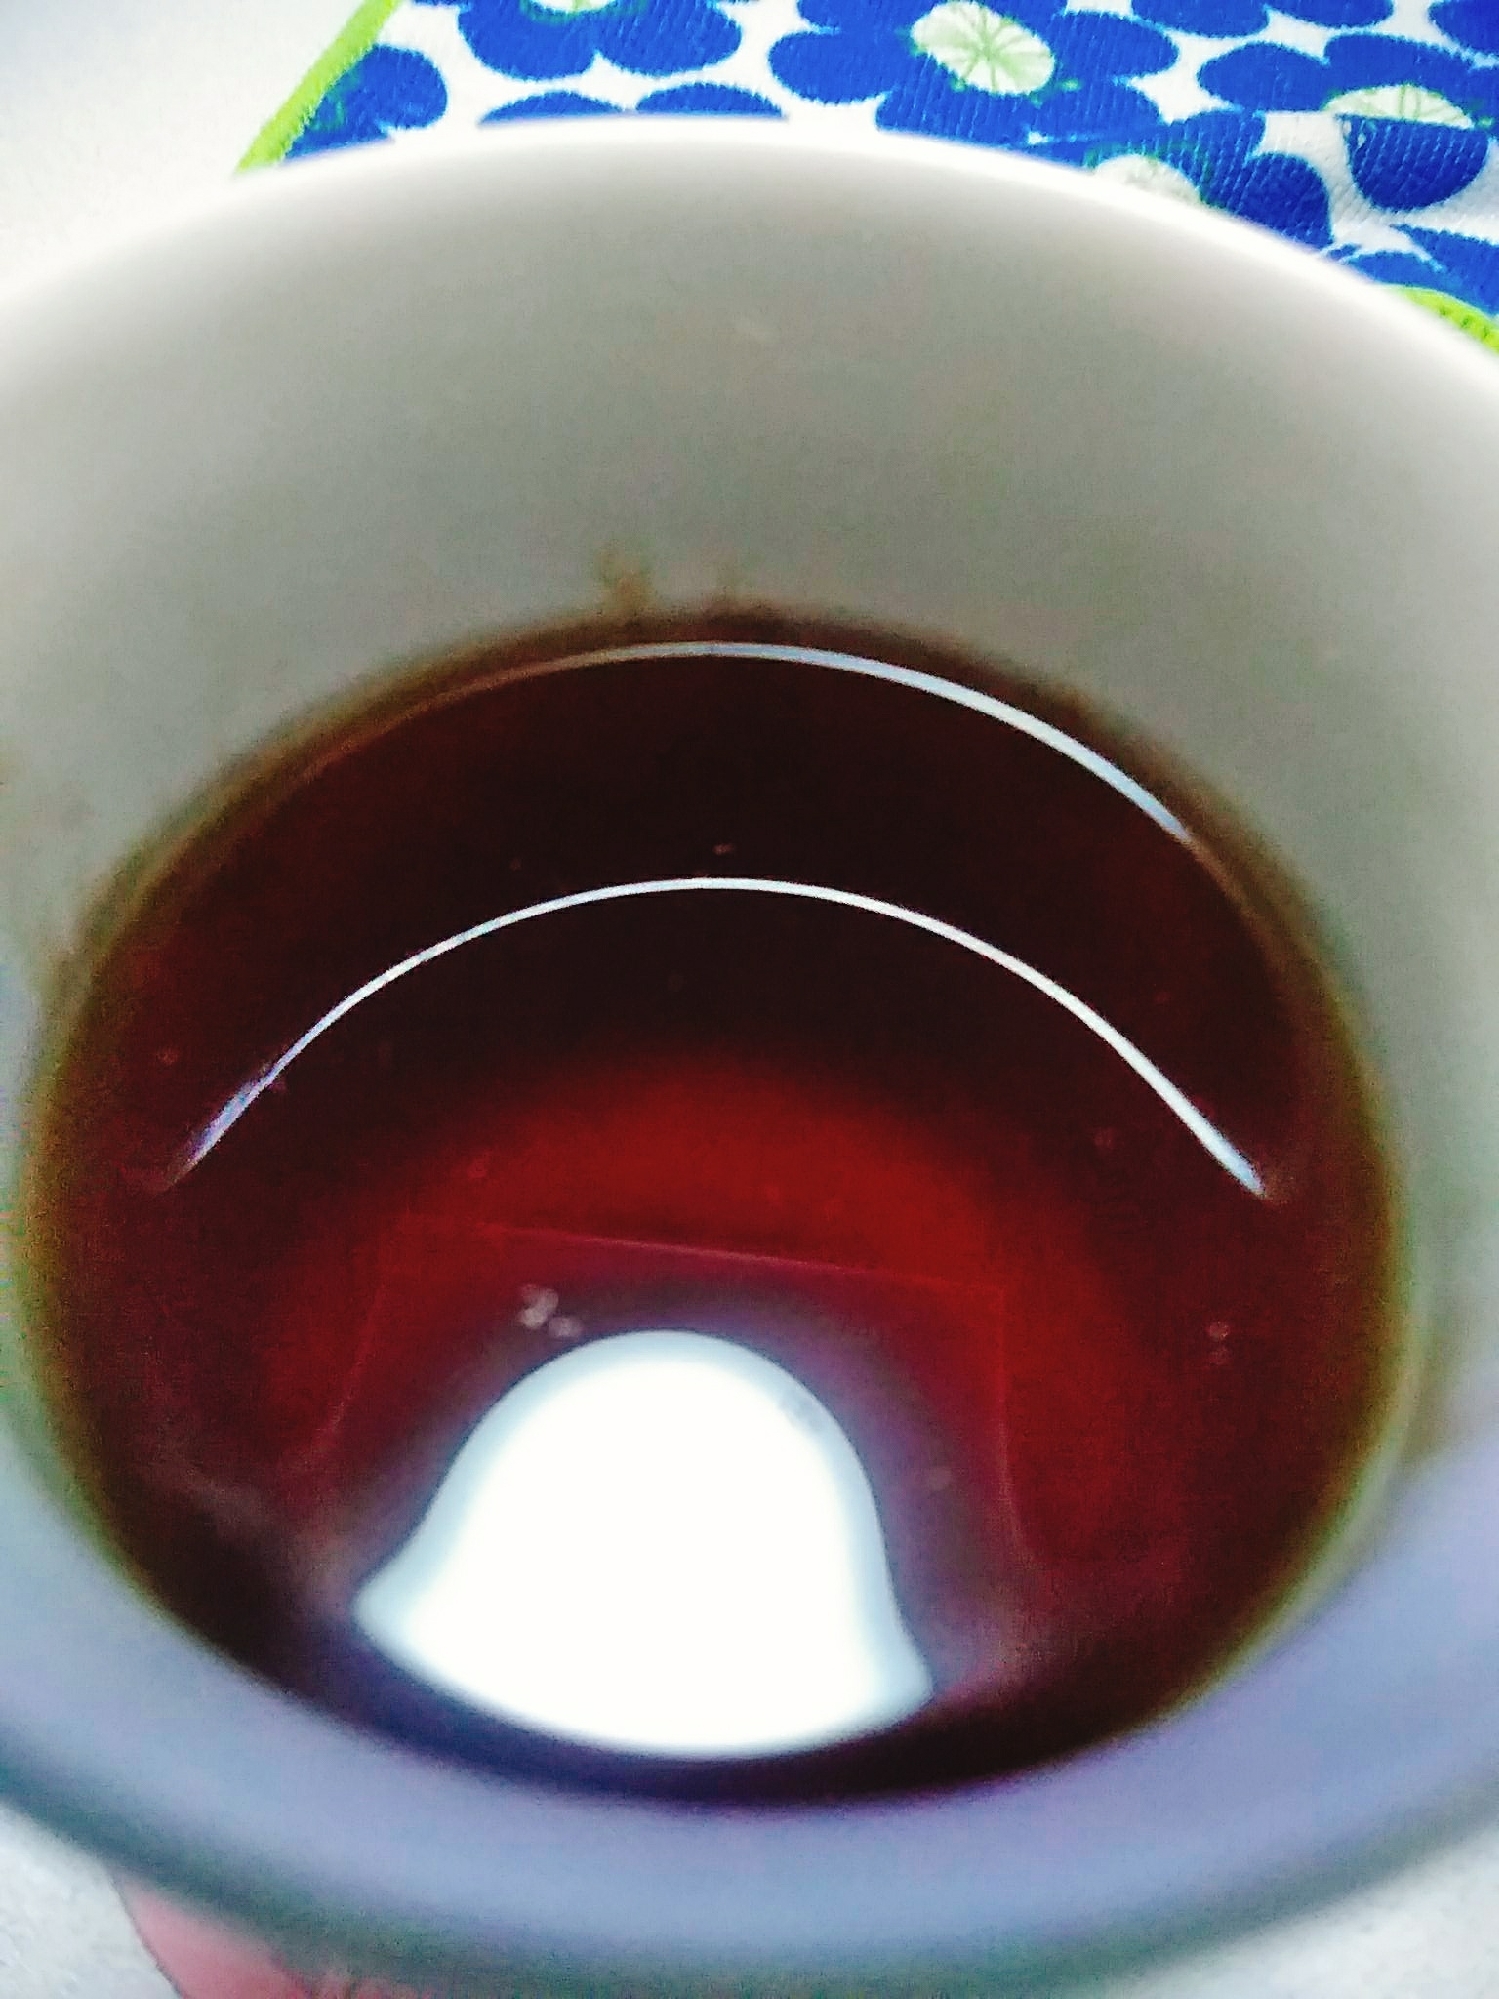 ピリあま生姜紅茶